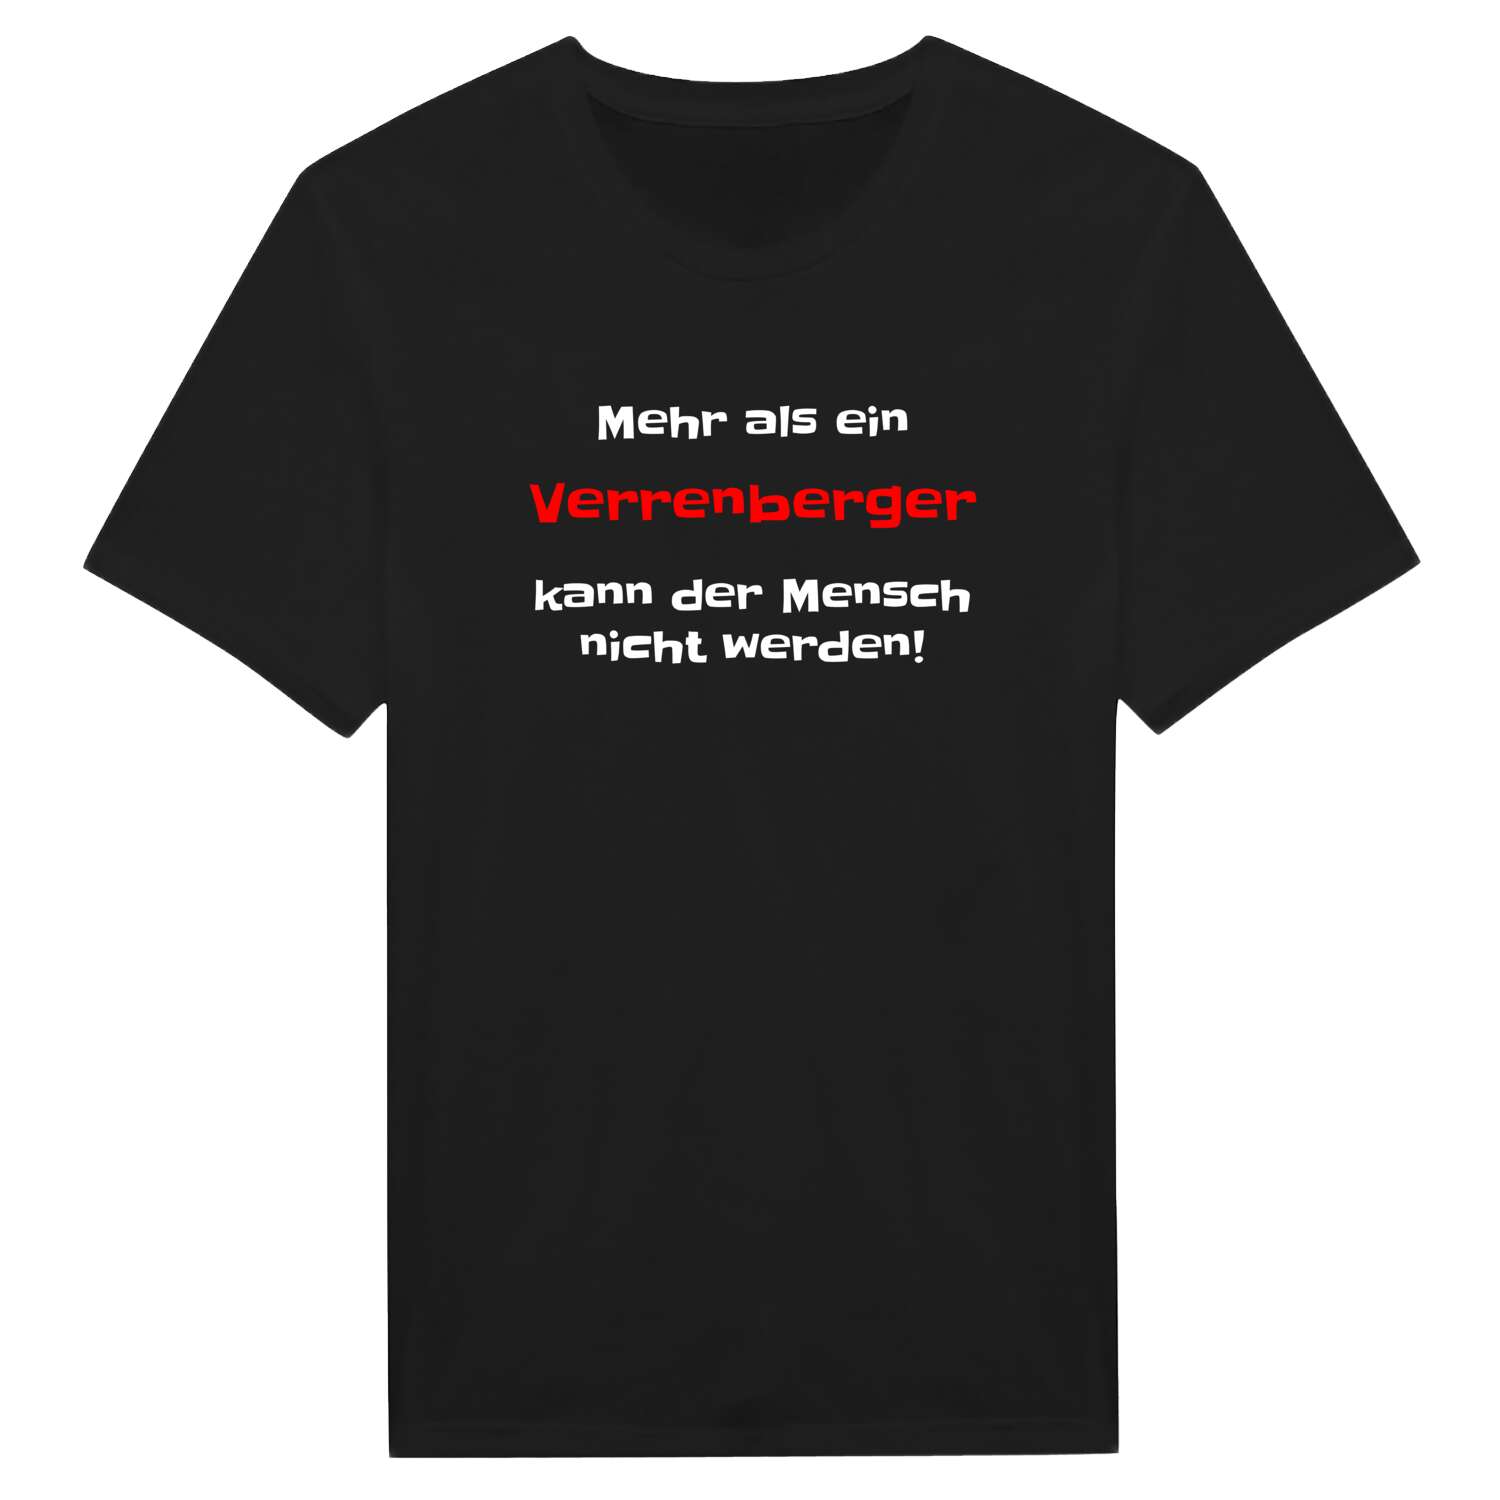 Verrenberg T-Shirt »Mehr als ein«